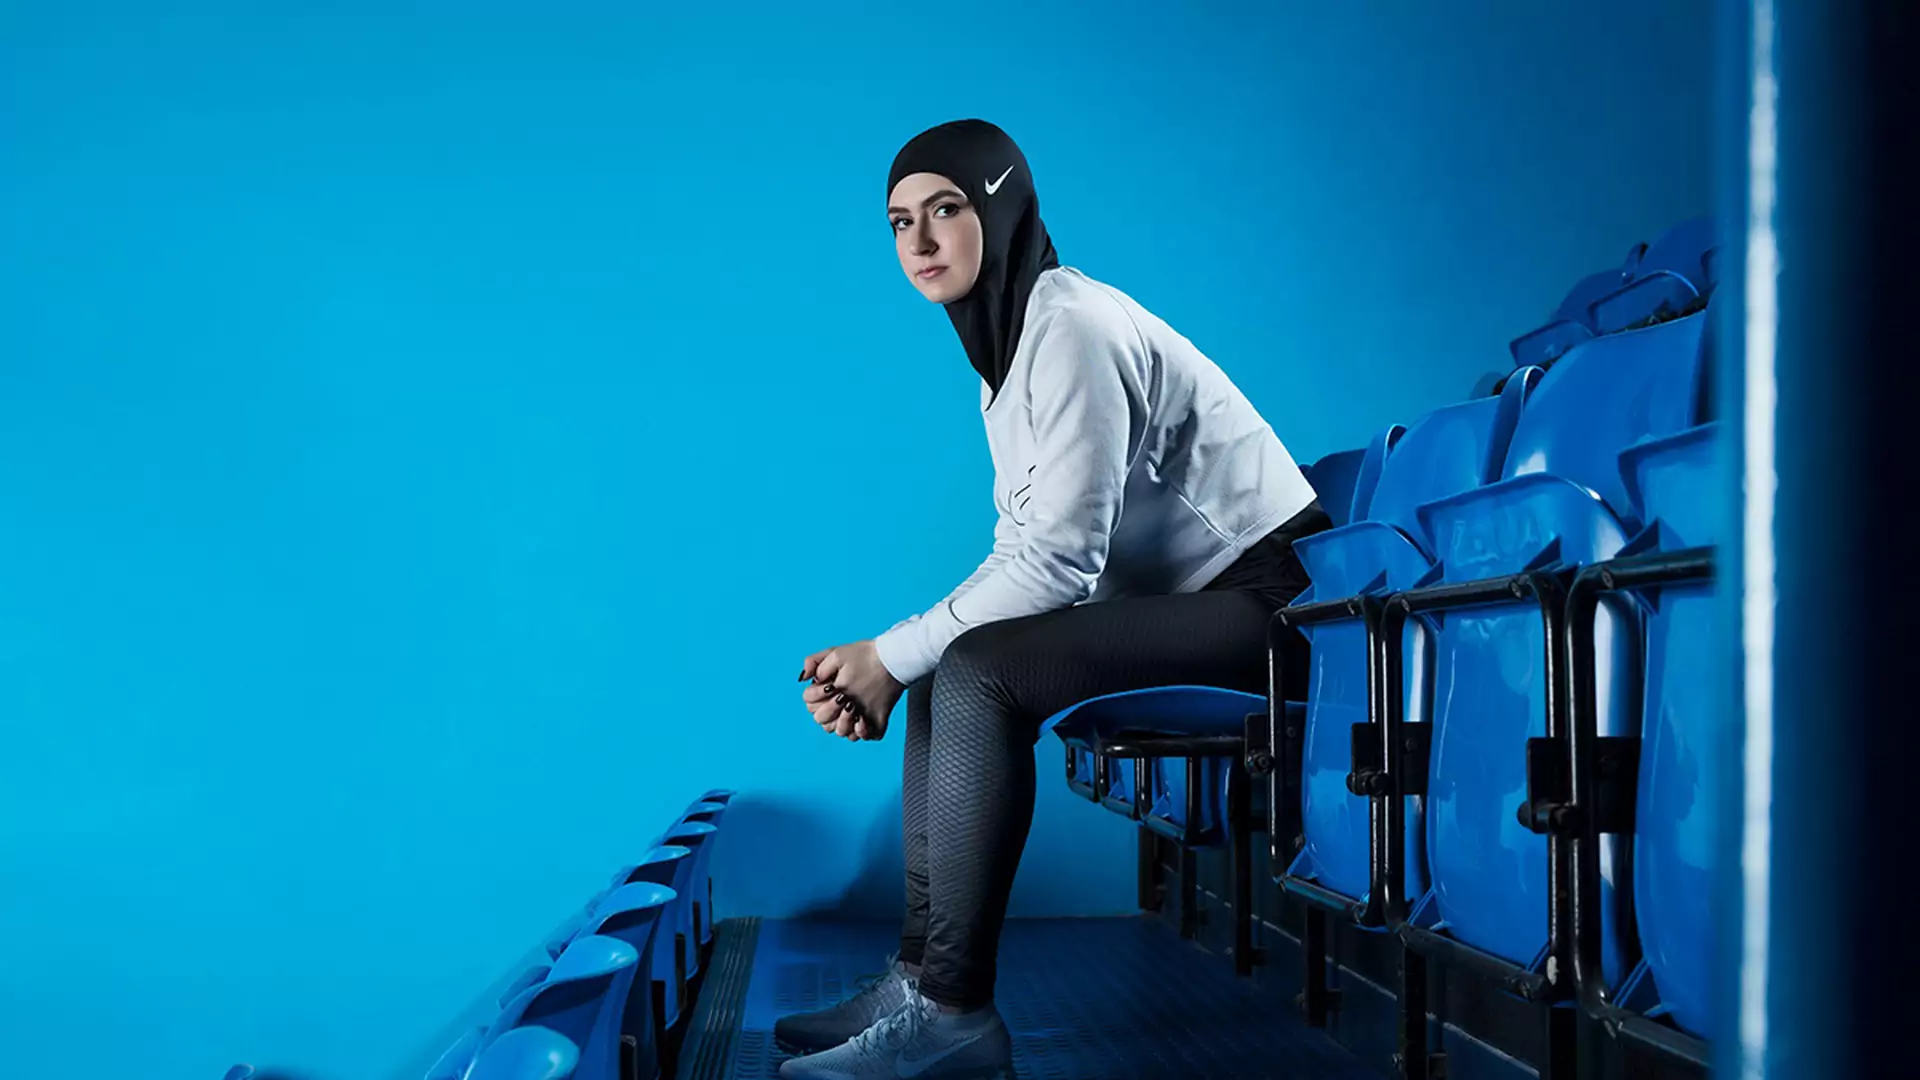 Muzułmanki to też sportsmenki. Pomyśl o tym, zanim skrytykujesz hidżab Nike